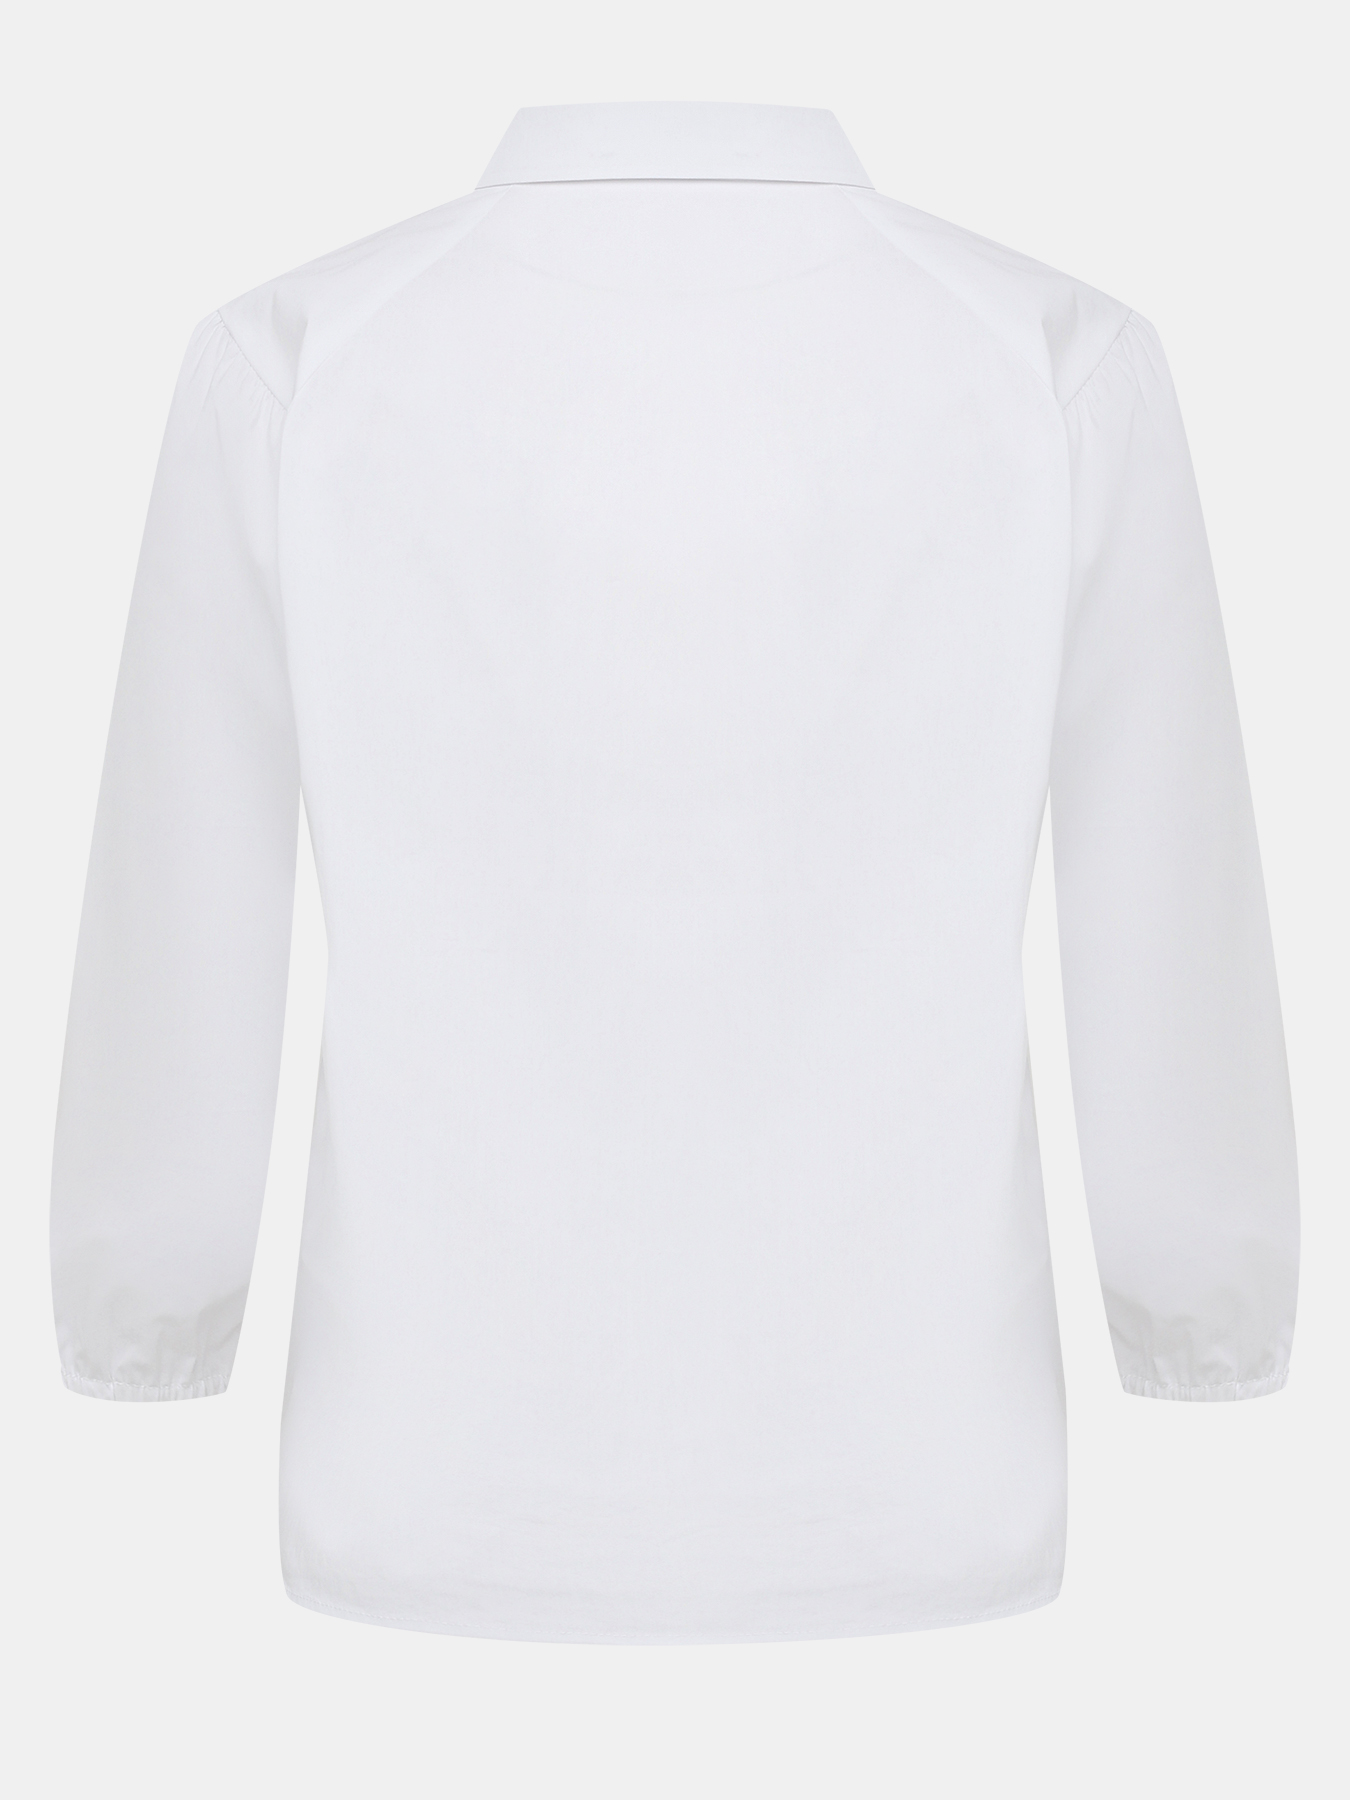 Блузка Taifun 425157-021, цвет белый, размер 46 - фото 2